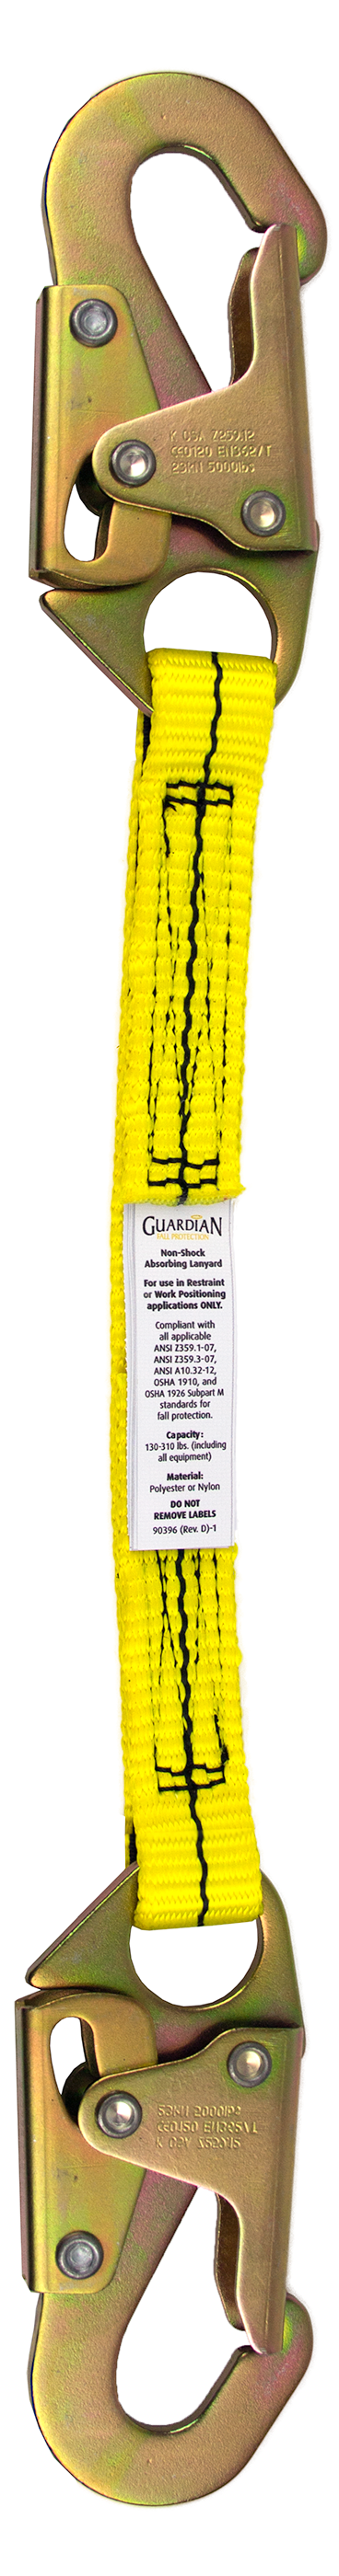 Guardian 01250 2' Single Leg Non-Shock Absorbing Lanyard